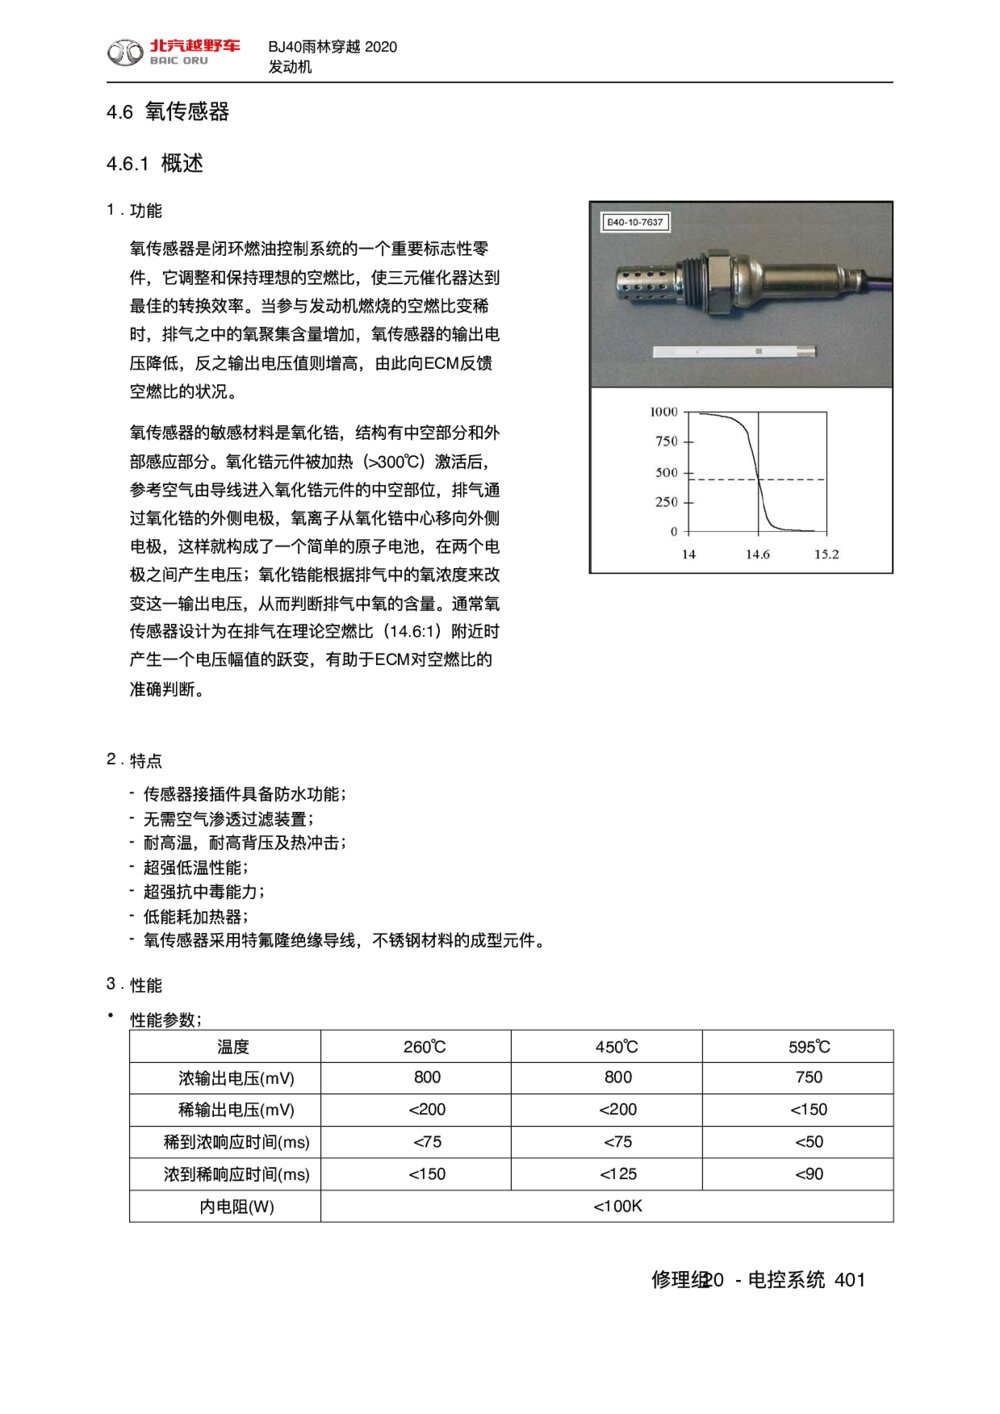 2020款北京BJ40雨林穿越版氧传感器手册1